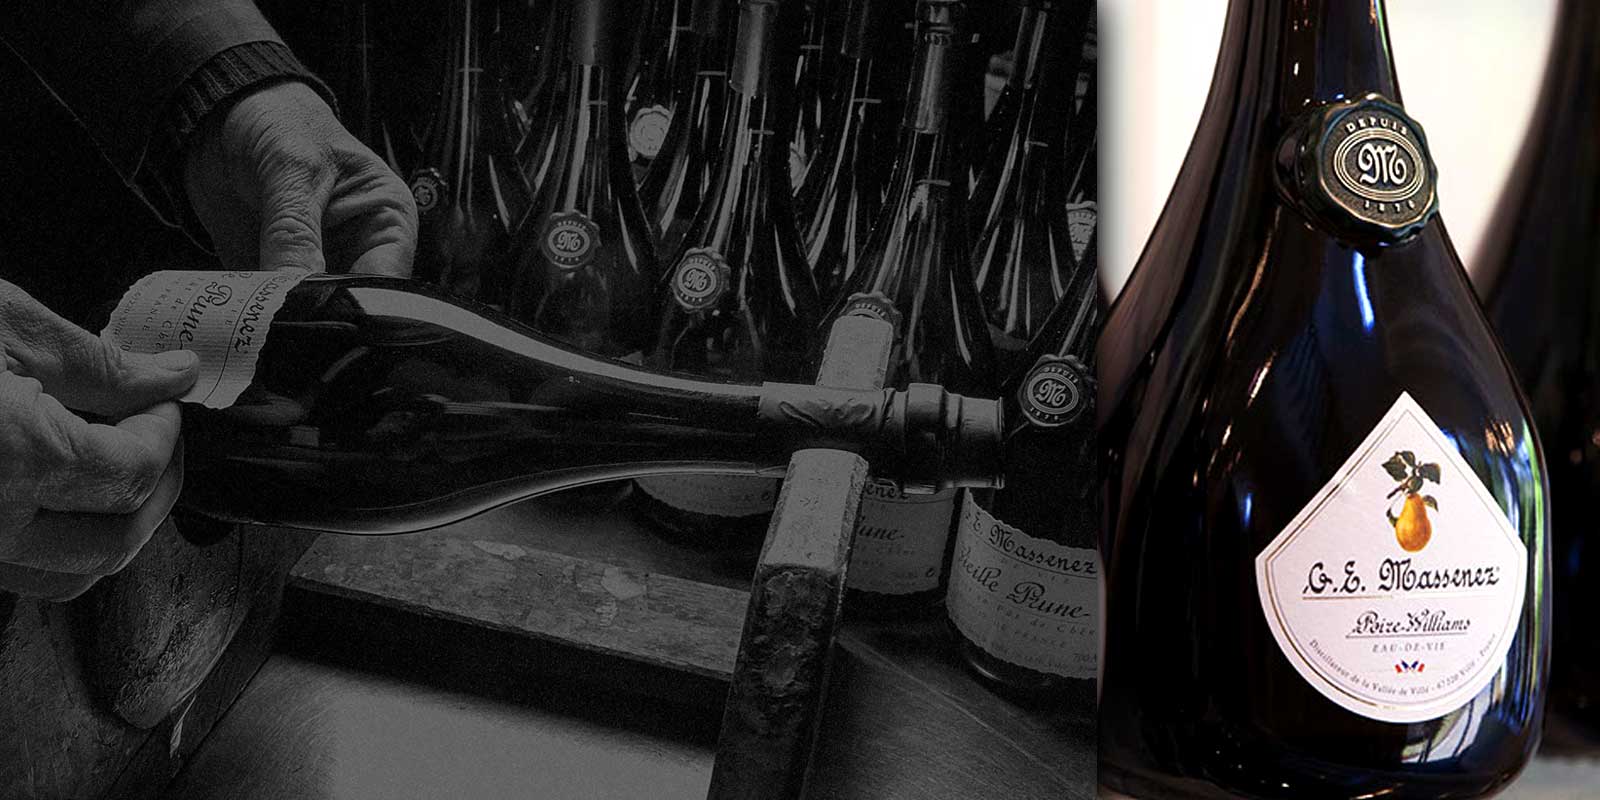 Minuman beralkohol berkualitas dari penyulingan Massenez Sejarah Pabrik Penyulingan Massenez dimulai pada tahun 1870, ketika Jean-Baptiste Massenez bekerja sebagai penyuling di Val de Ville di Urbeis.